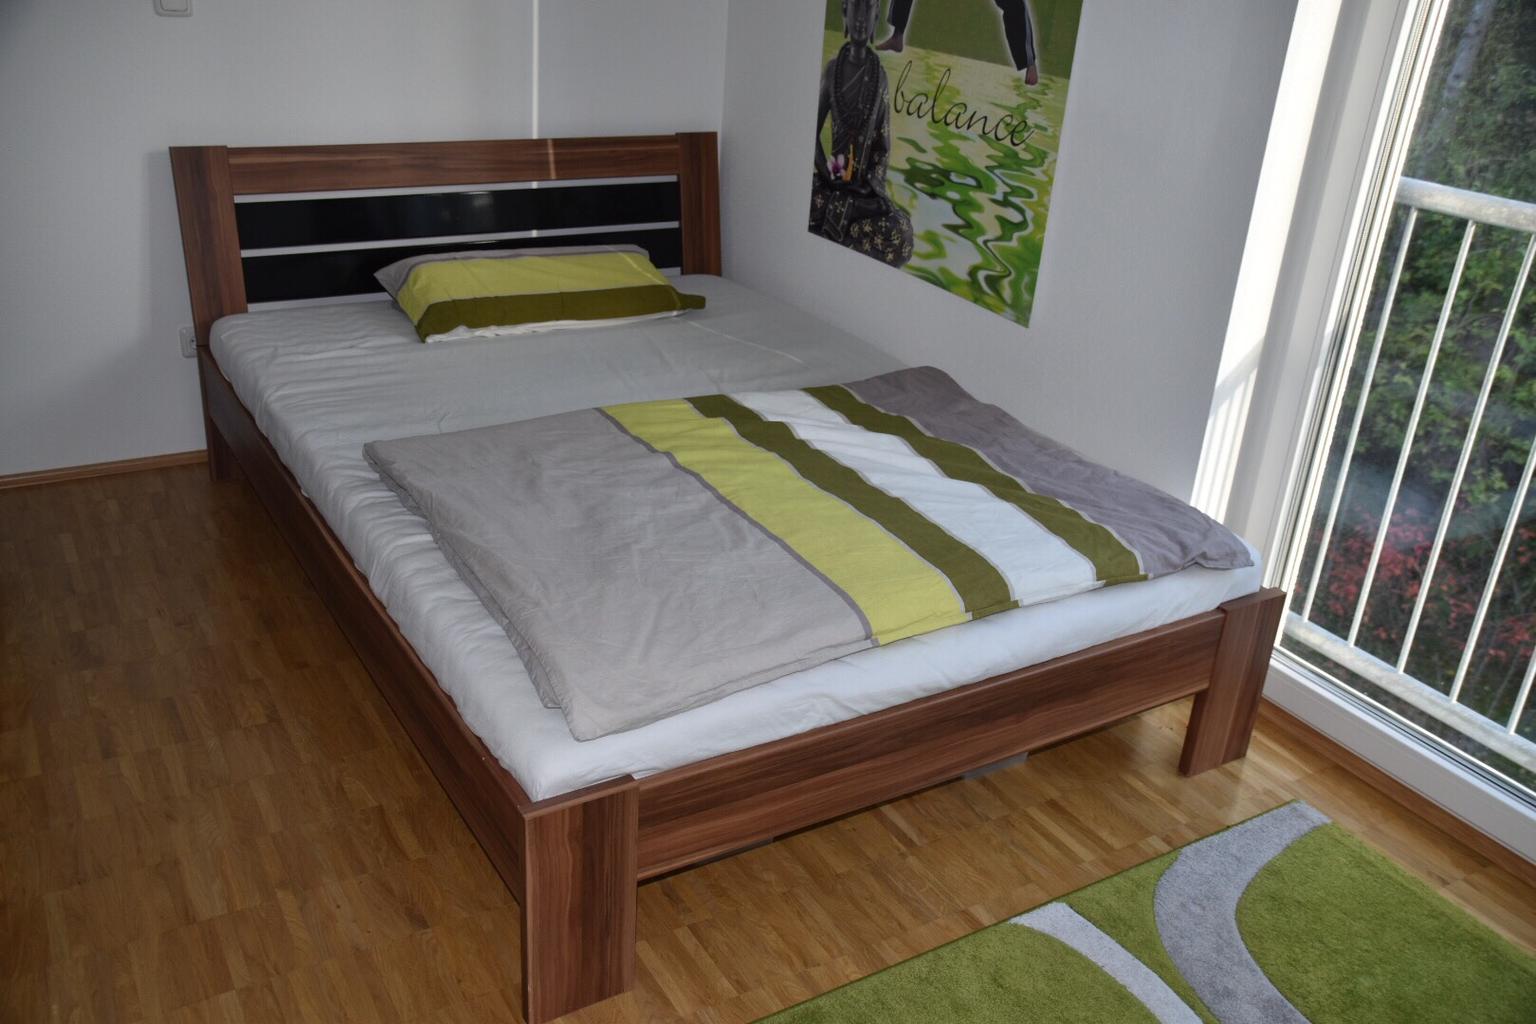 Verkaufen Bett 1,40 x 2,00 Meter in 83026 Rosenheim for € ...